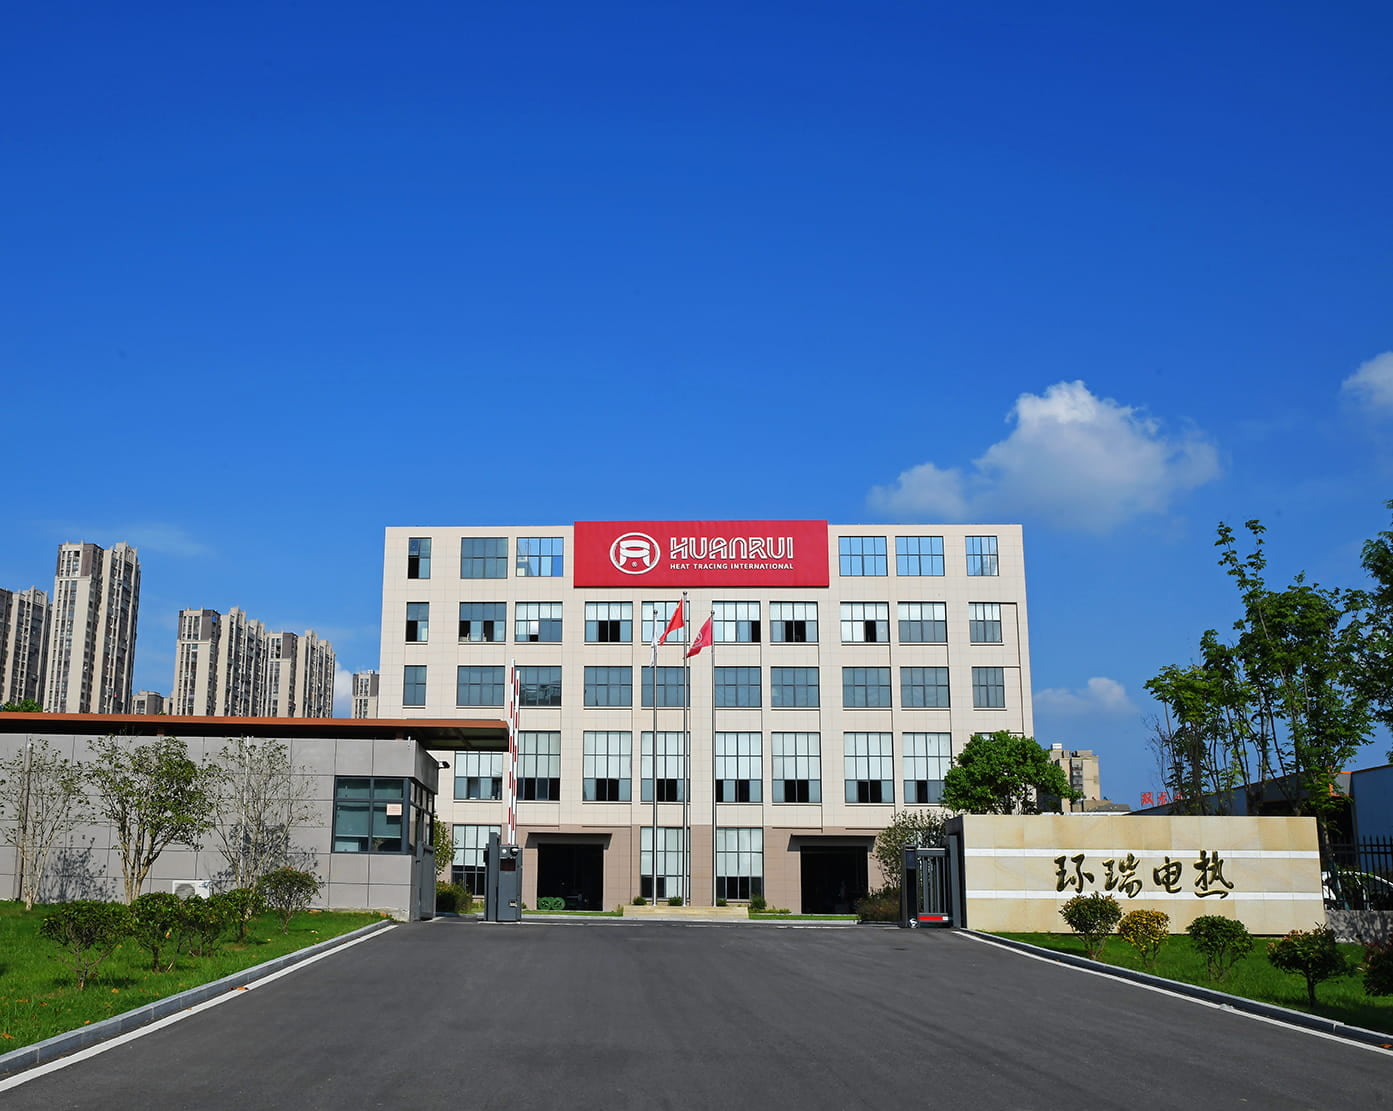 Célébrez chaleureusement l'offre réussie d'Anhui Huanrui pour le projet d'approvisionnement de courroies chauffantes électriques et d'accessoires CNPC
